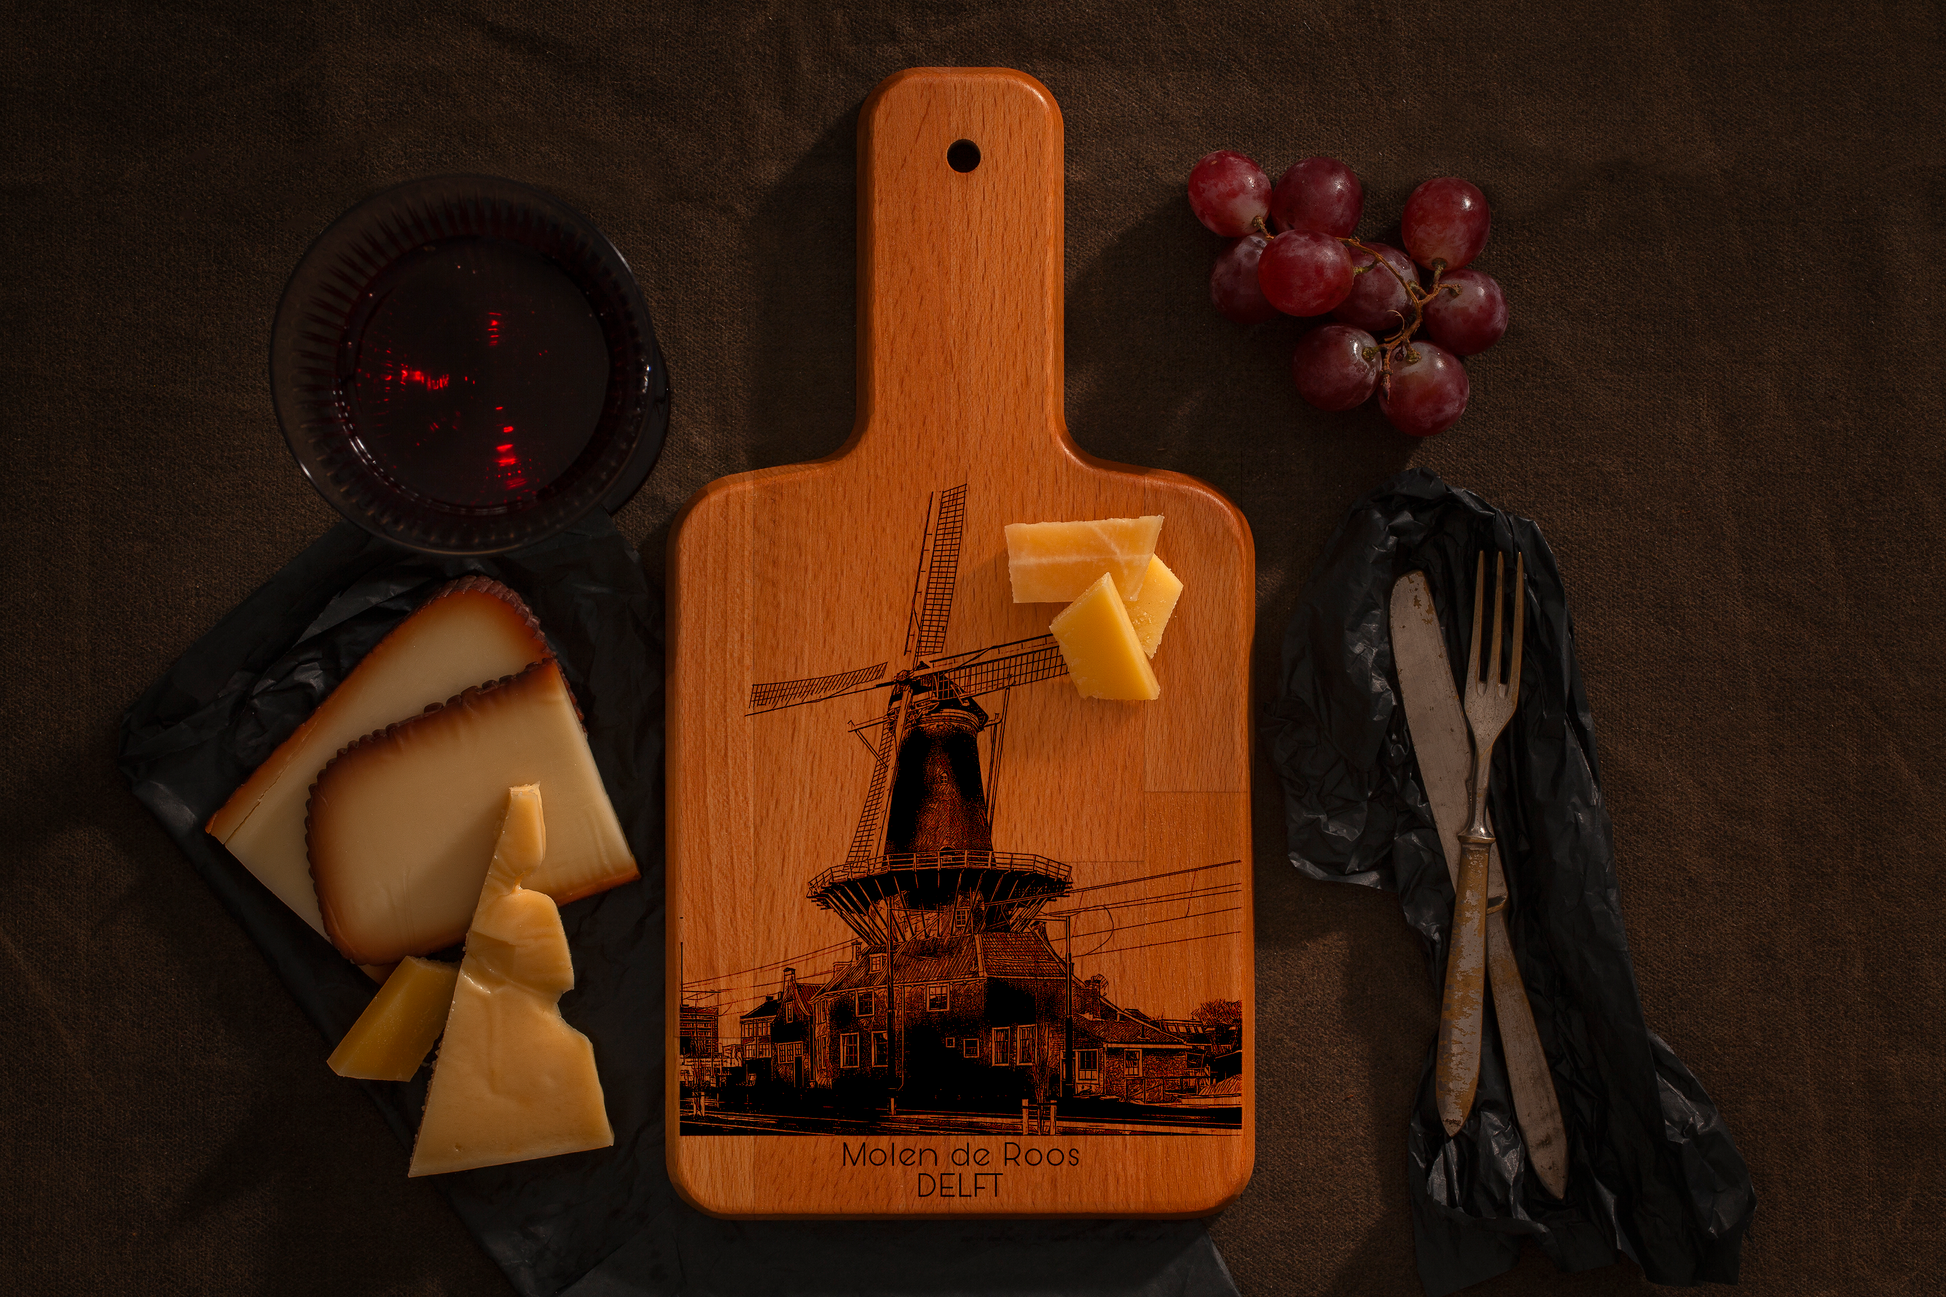 Delft, Molen de Roos, cheese board, with cheese